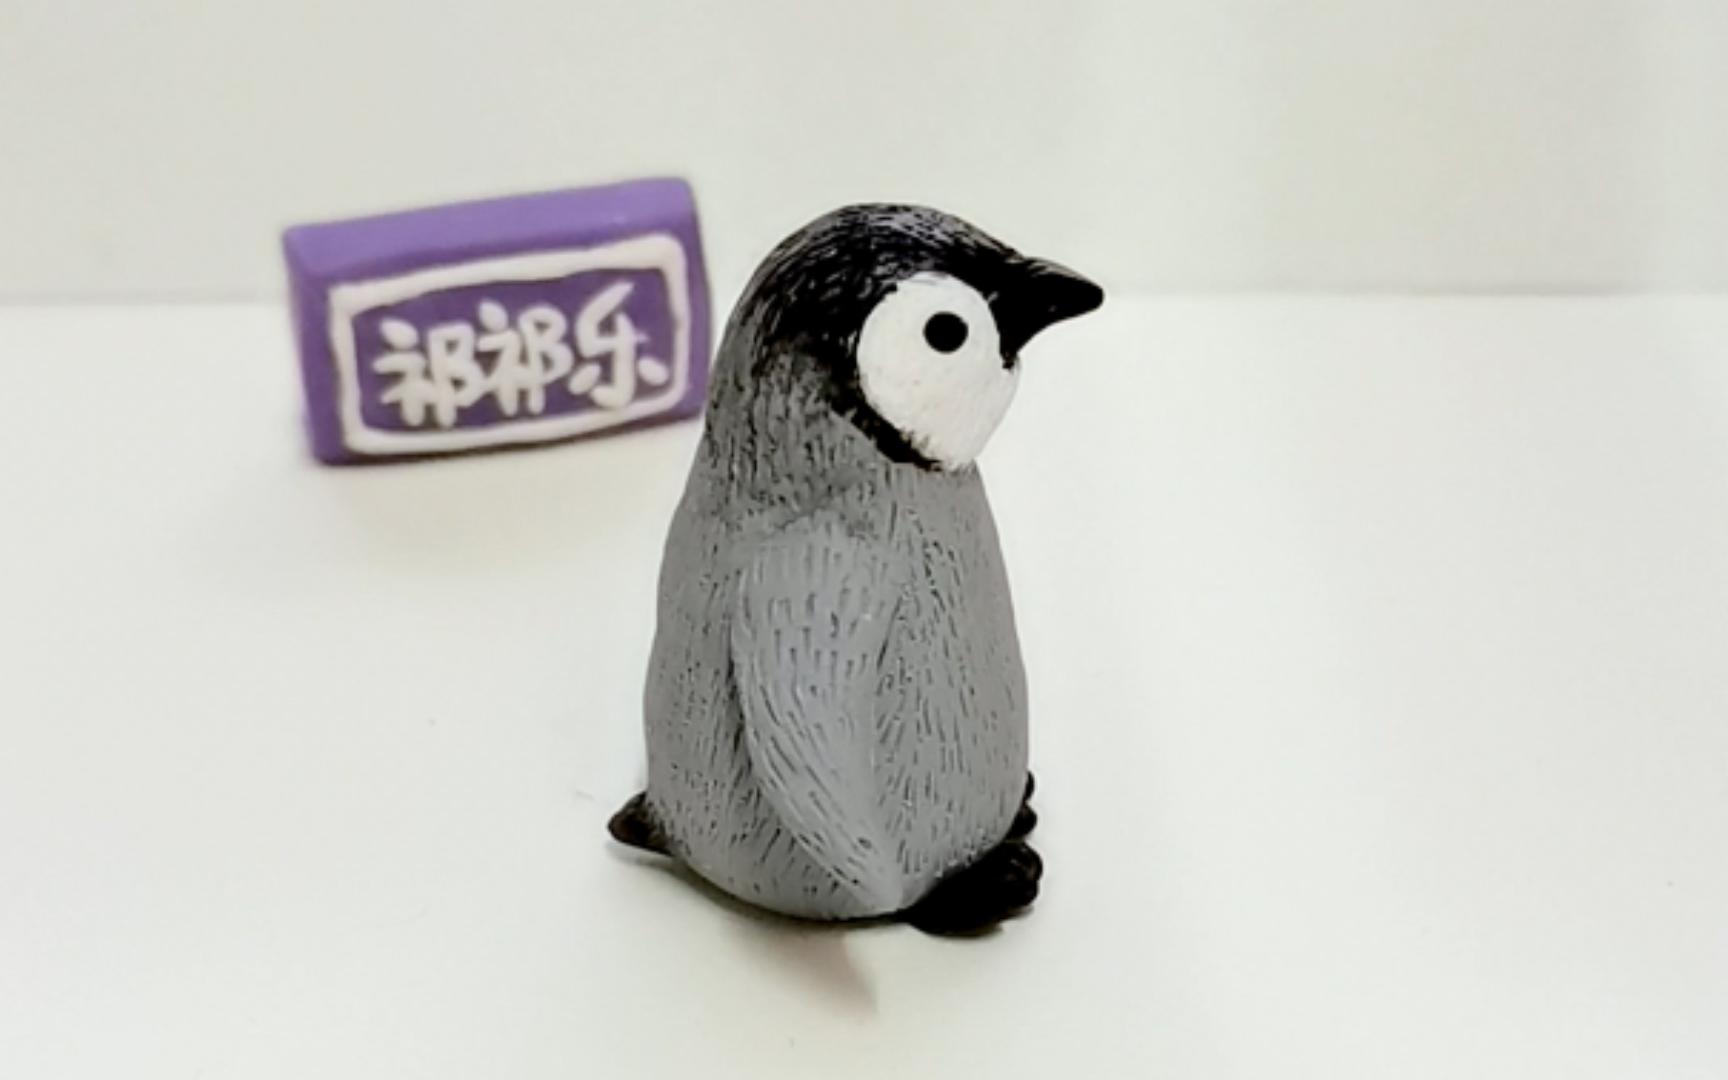 粘土制作教程小企鹅,粘土可爱动物制作过程企鹅宝宝,简单易学